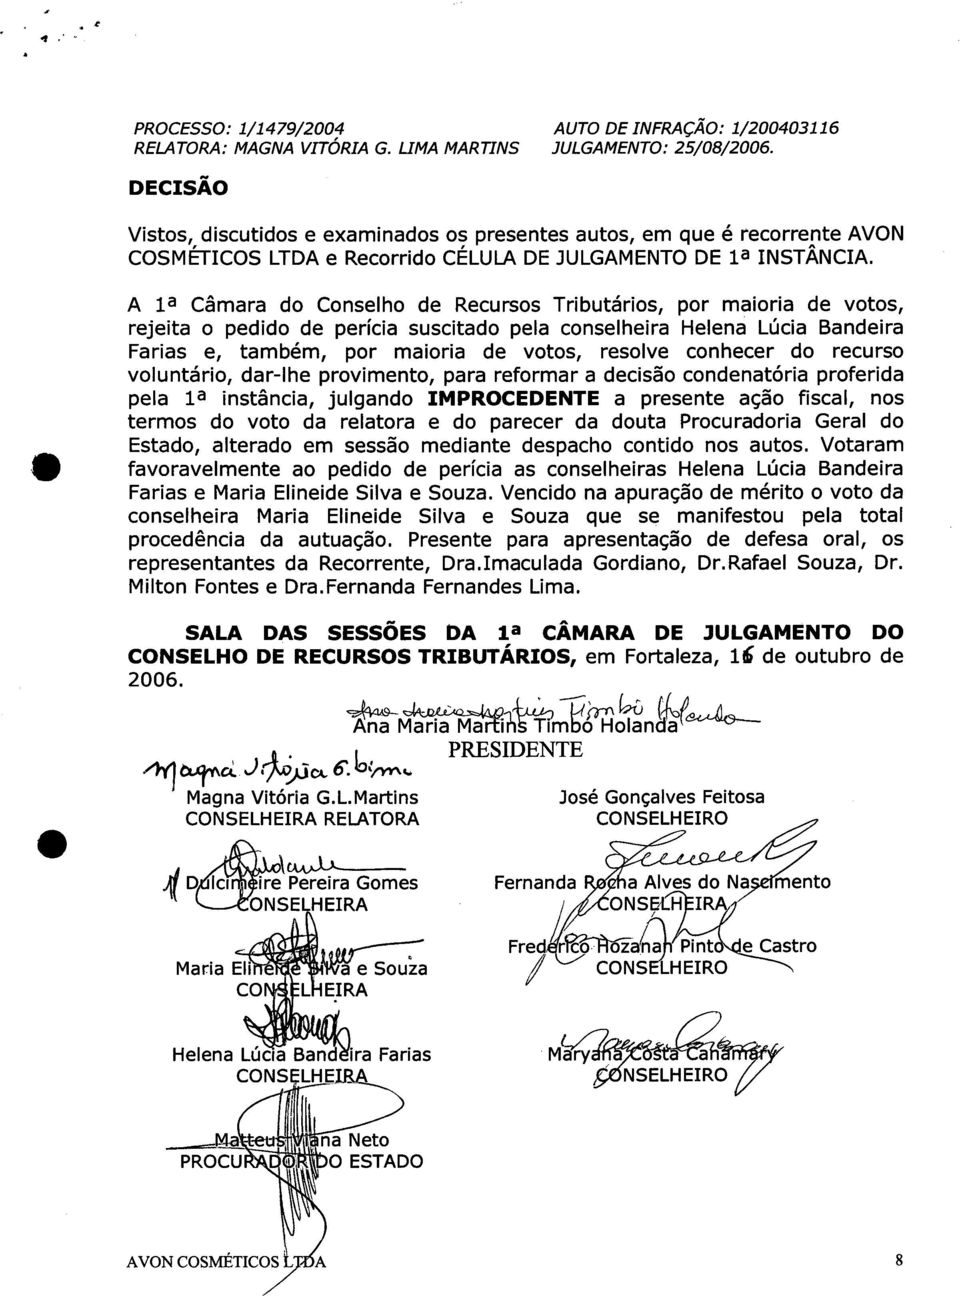 A la Câmara do Conselho de Recursos Tributários, por maioria de votos, rejeita o pedido de perícia suscitado pela conselheira Helena Lúcia Bandeira Farias e, também, por maioria de votos, resolve